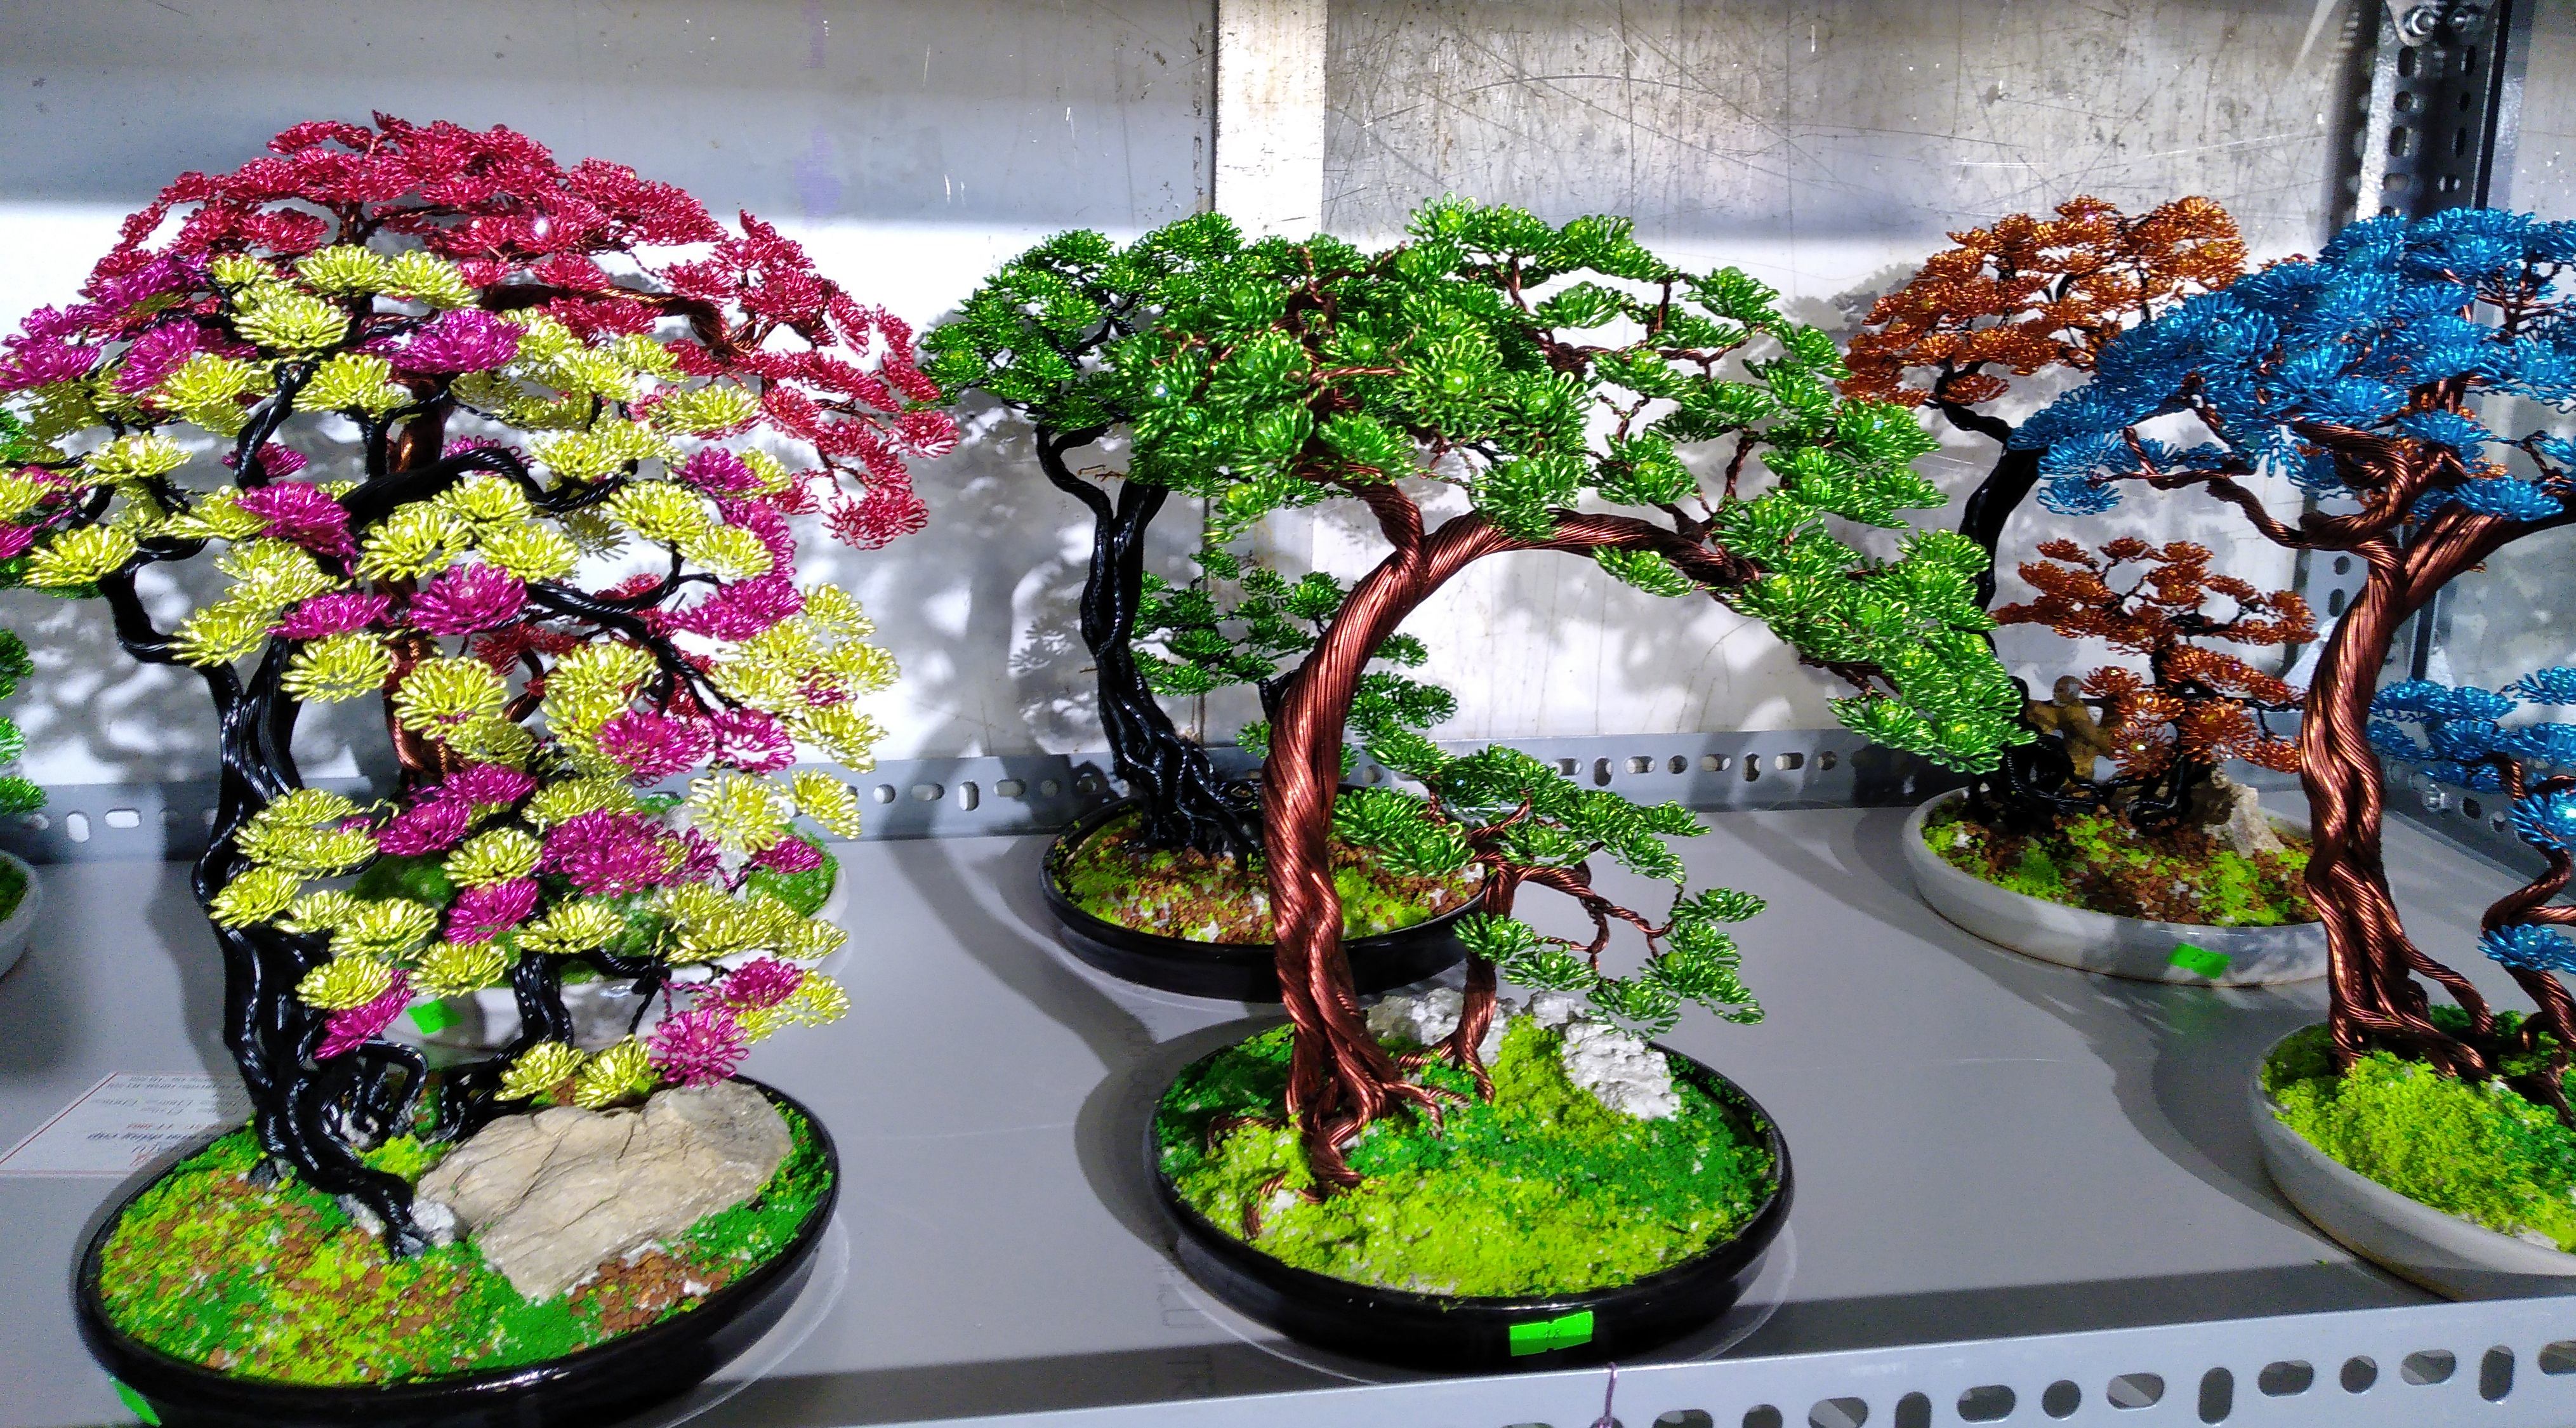 Kỳ lạ những cây bonsai... nhôm đồng tuyệt đẹp ‘hút hồn’ cả khách Tây - 3